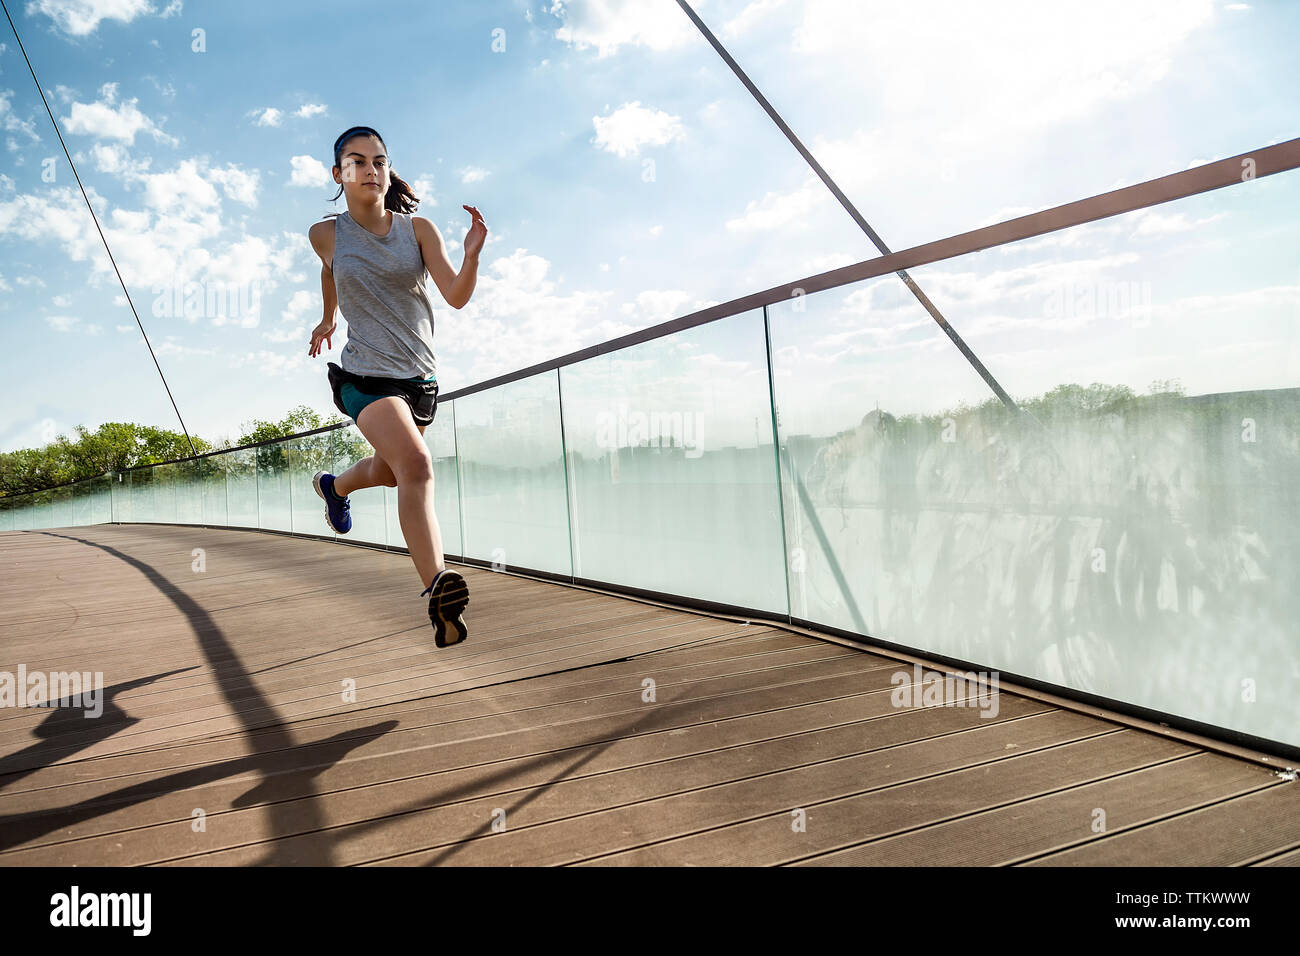 Female athlete running on bridge against sky Stock Photo